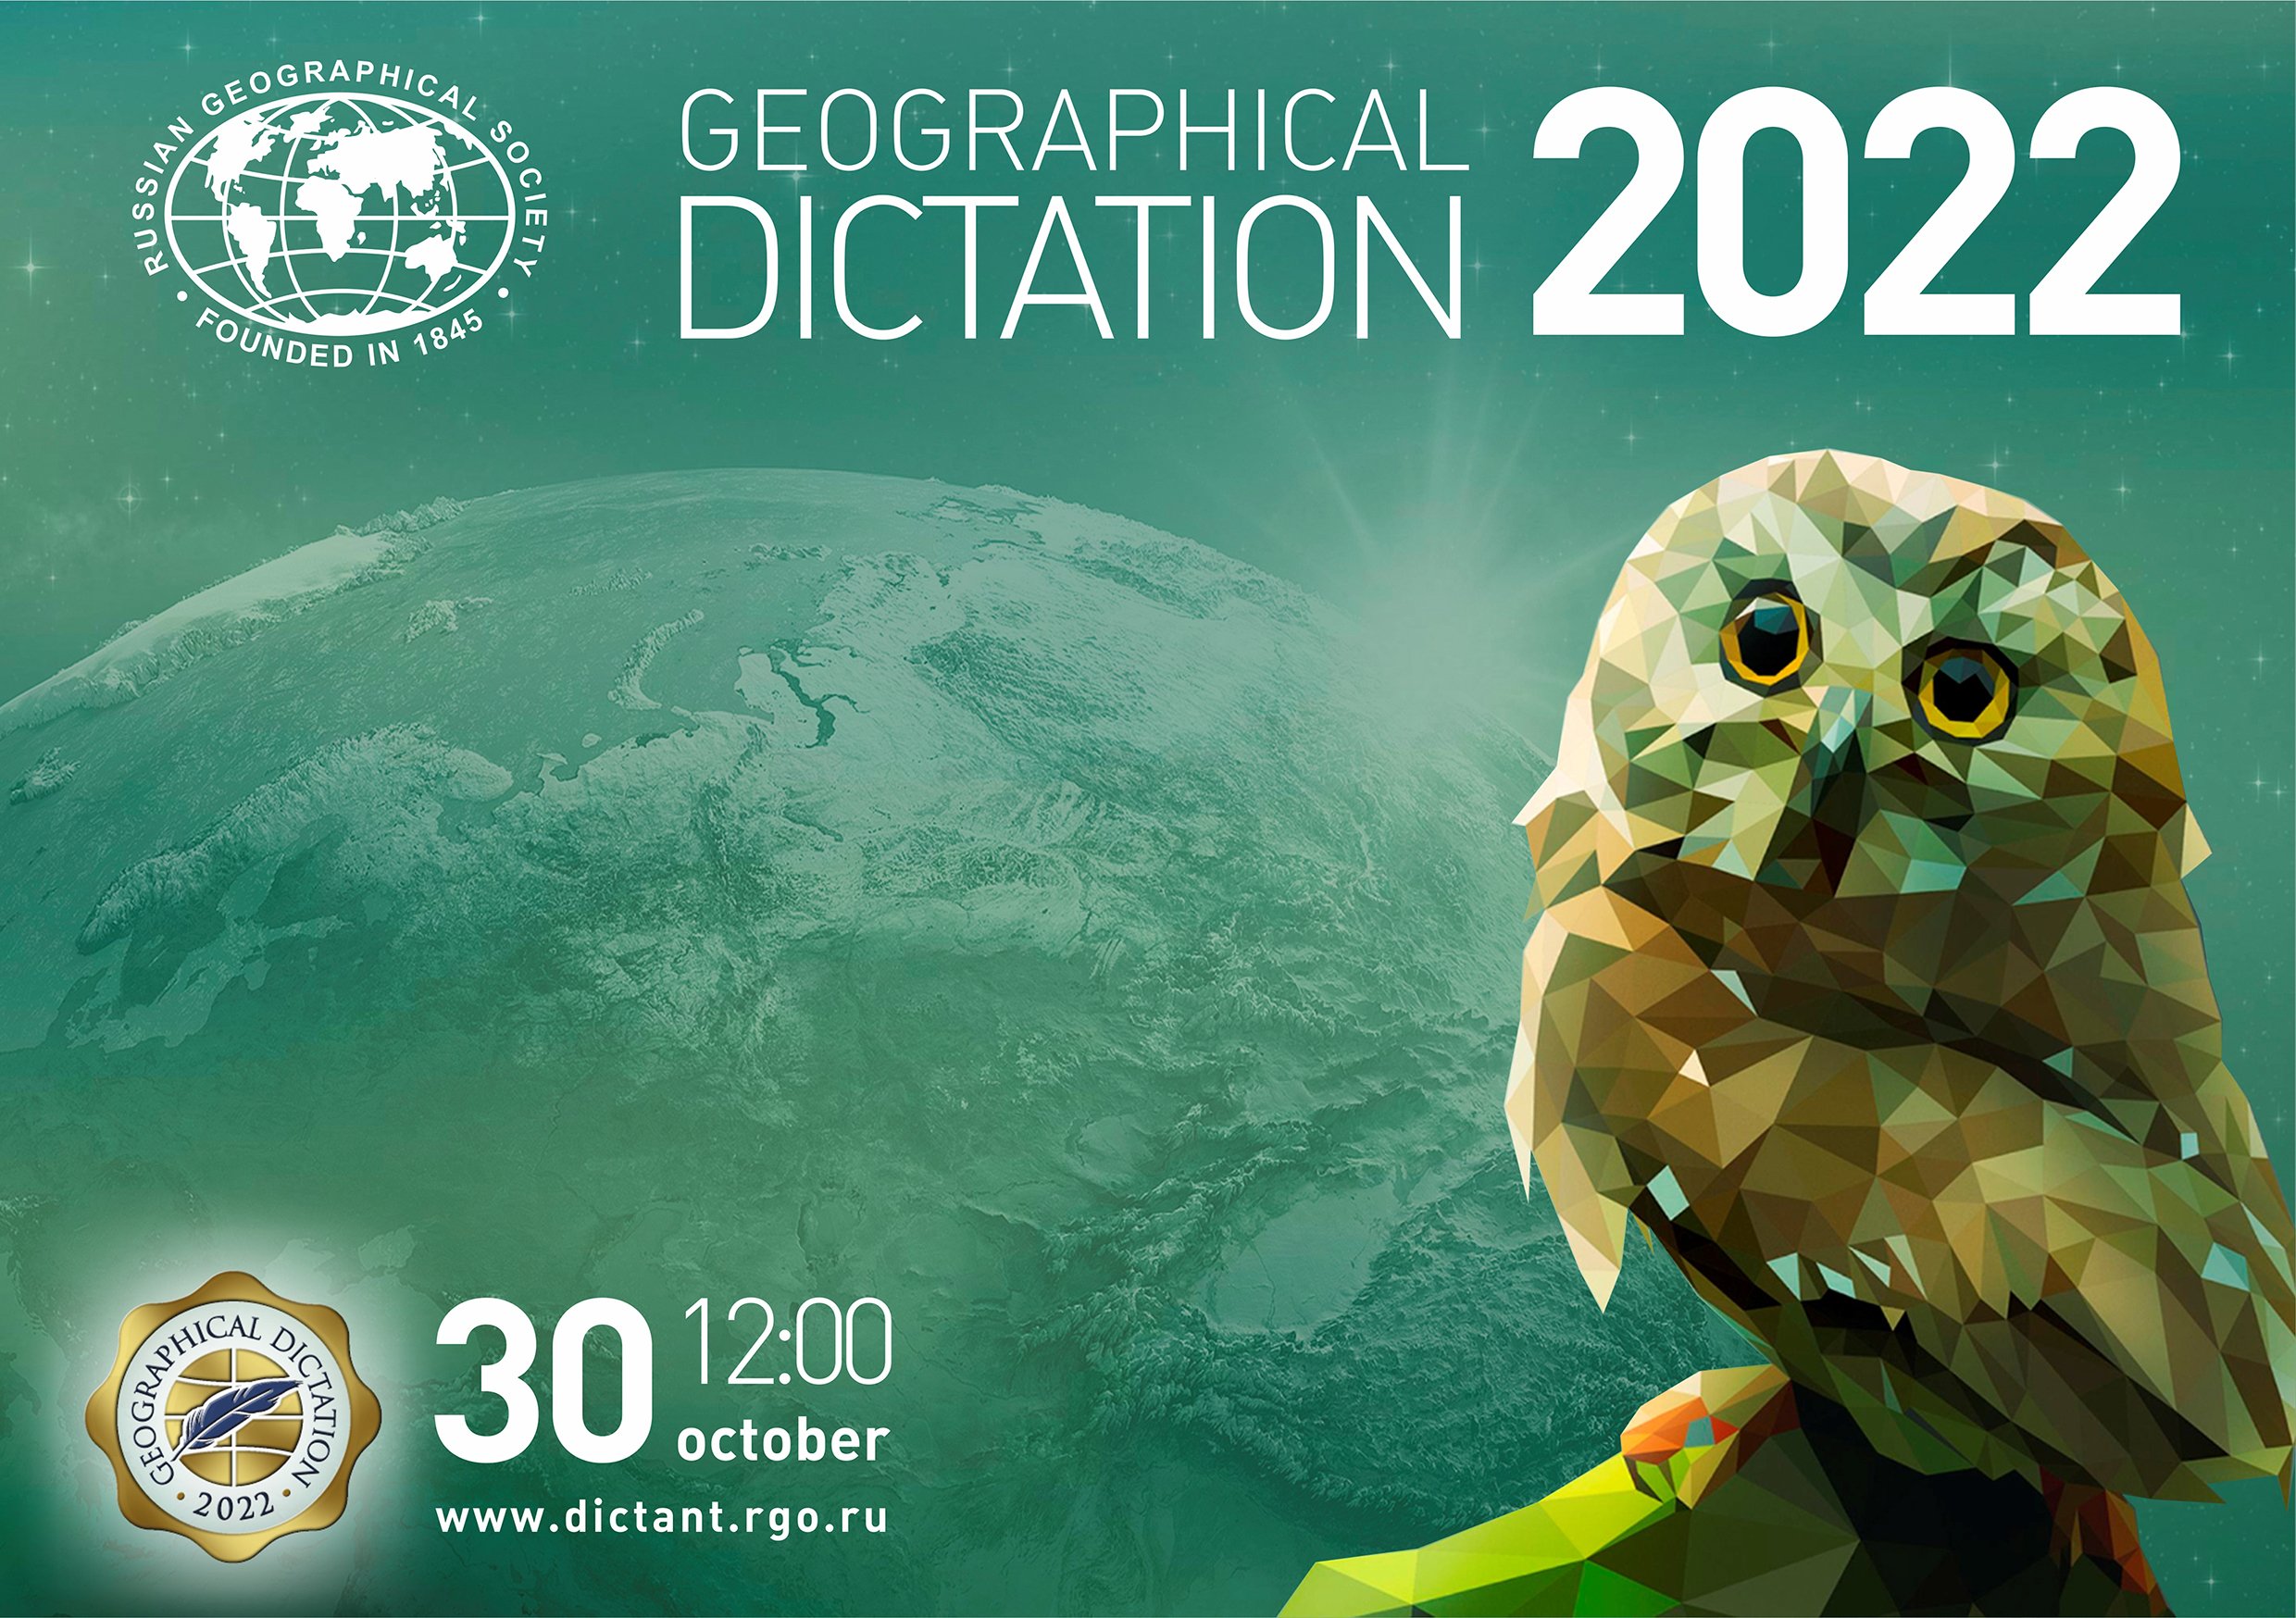 Географический диктант–2022